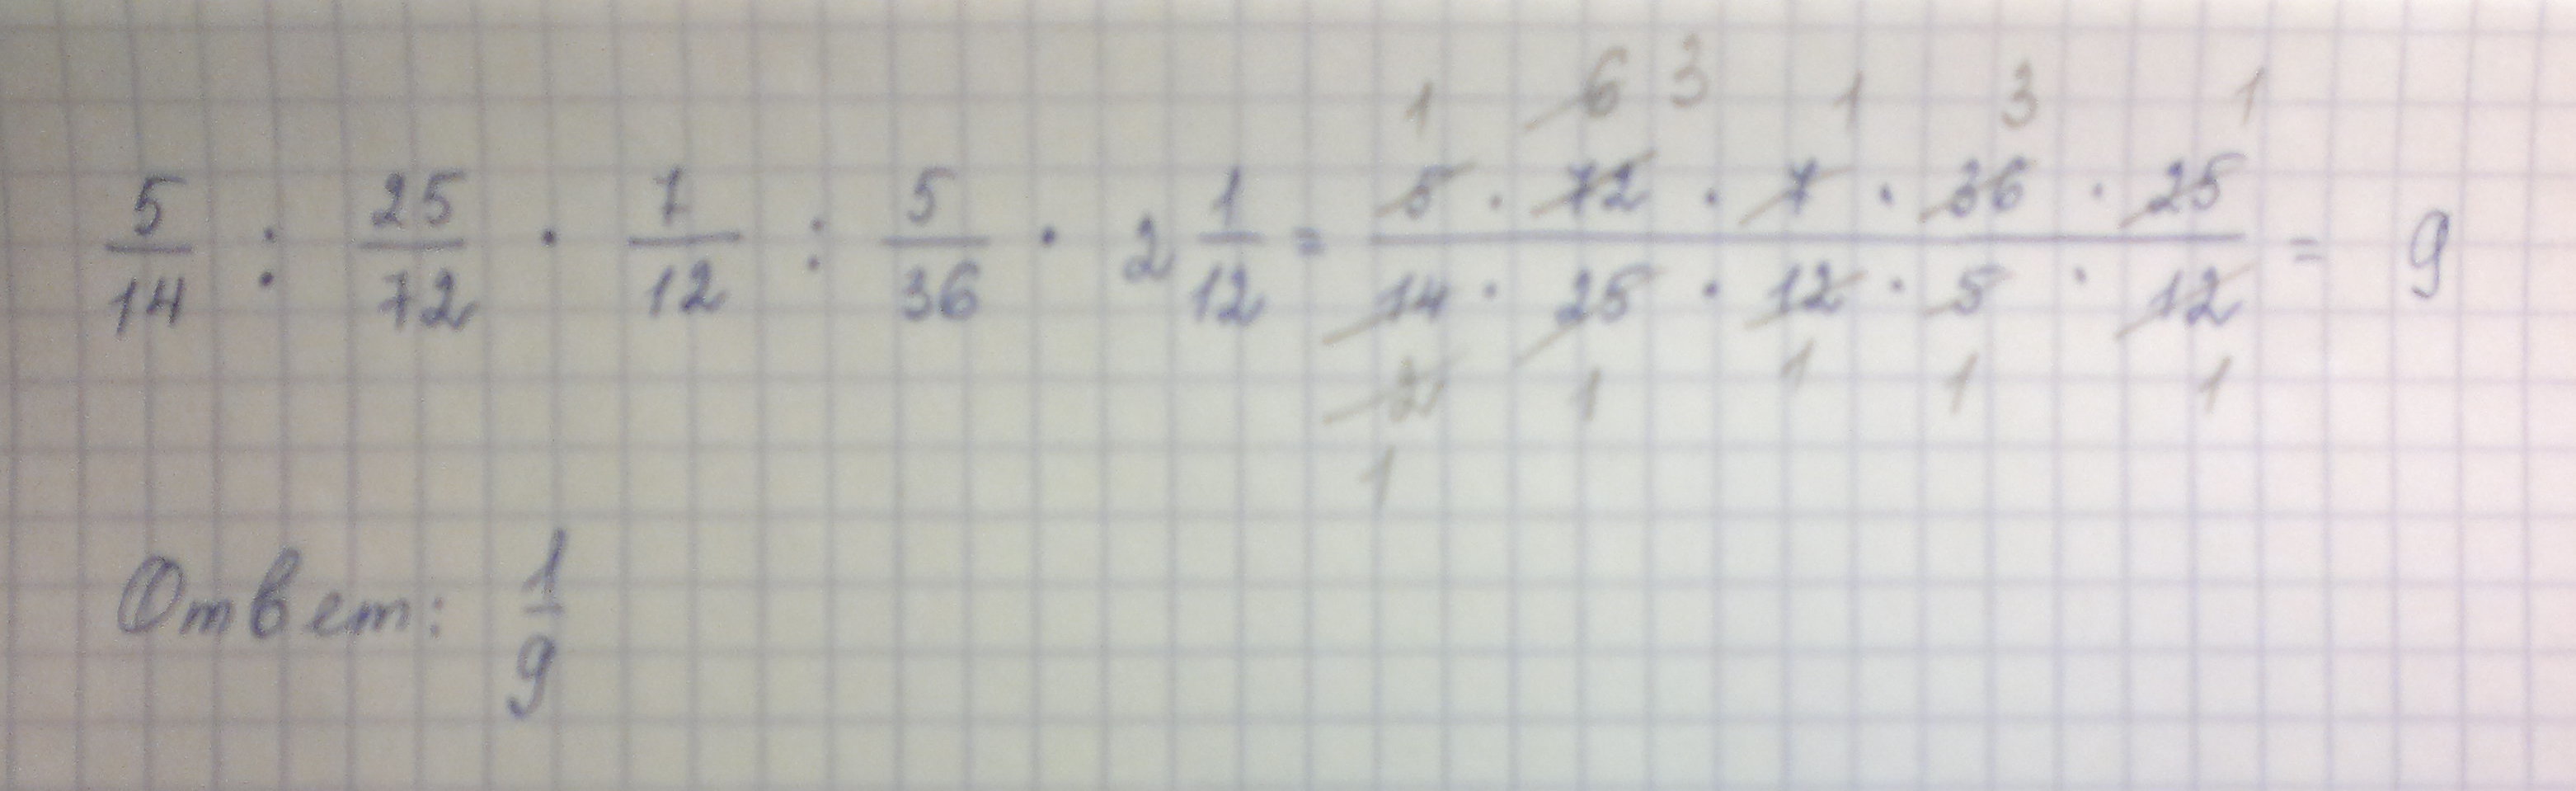 3 72 умножить на 3 5. Укажите число обратное результату действий 5/14 25/72 7/12 5/36 2 1/12. Укажите число обратное результату действий. Укажите число обратное 1 5/7. Вычислите 2 целых 2/3 в 5 степени умножить на 3/8 в 6 степени.